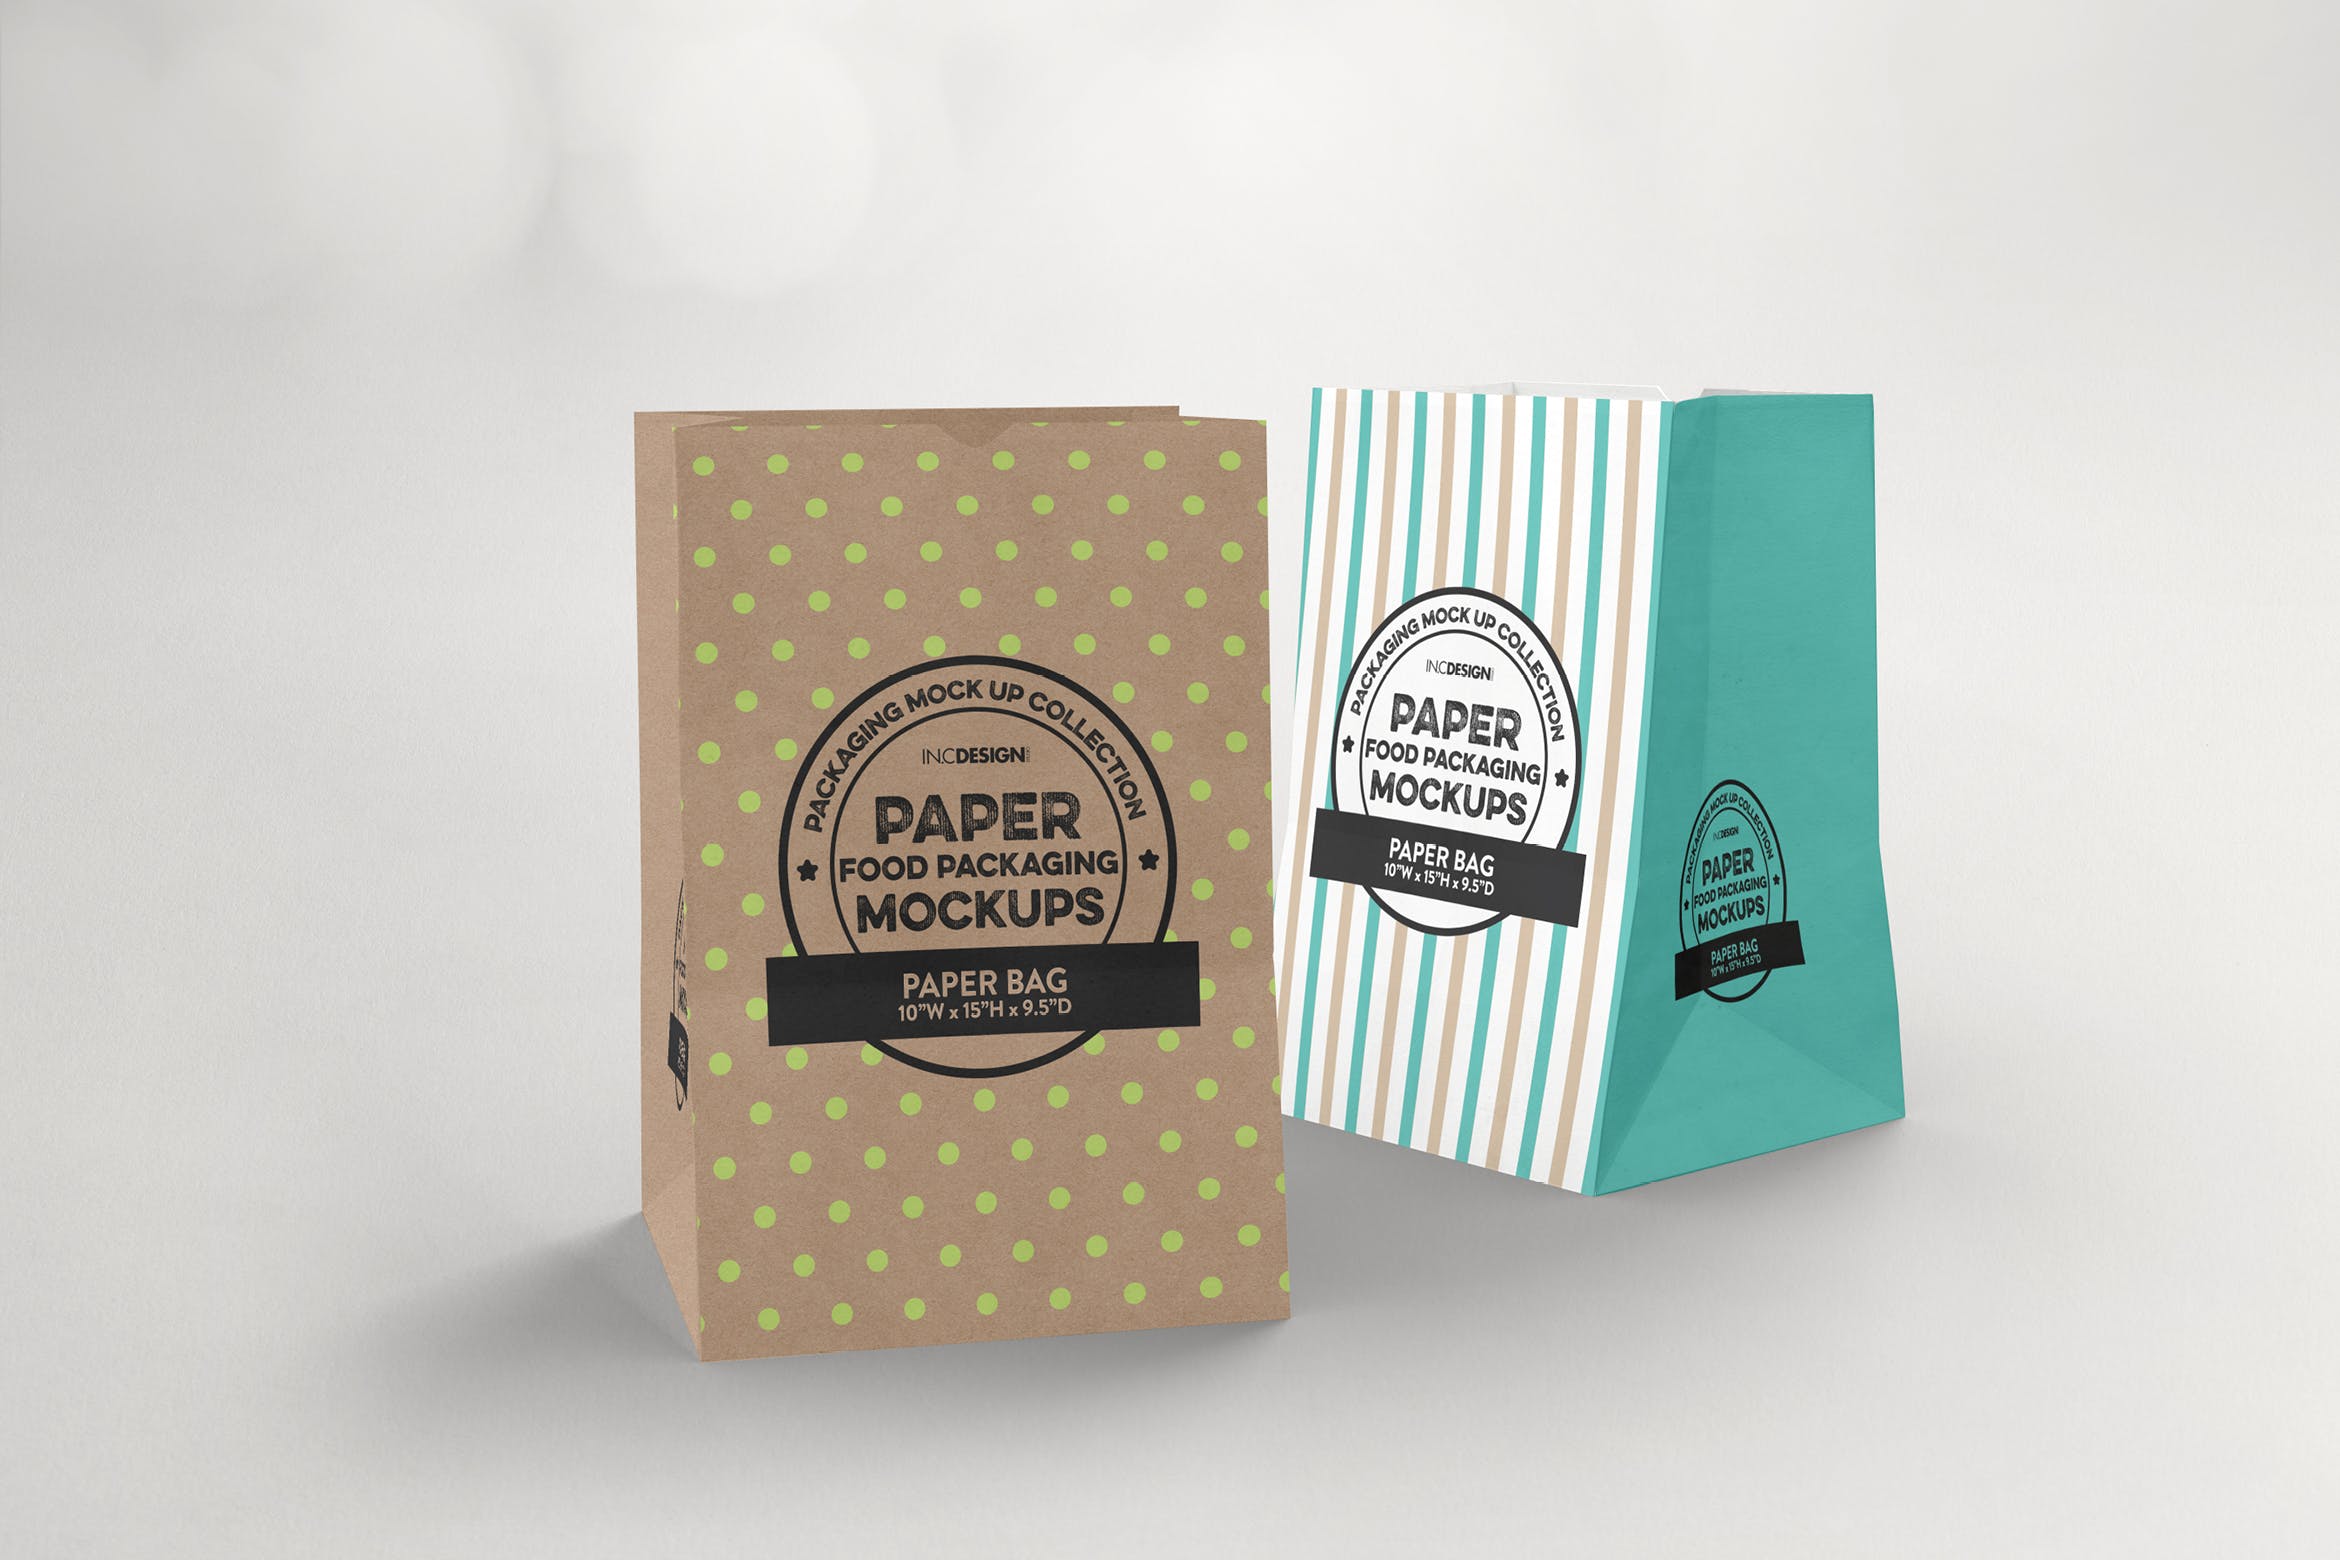 杂货纸袋包装设计效果图非凡图库精选 Grocery Paper Bags Packaging Mockup插图